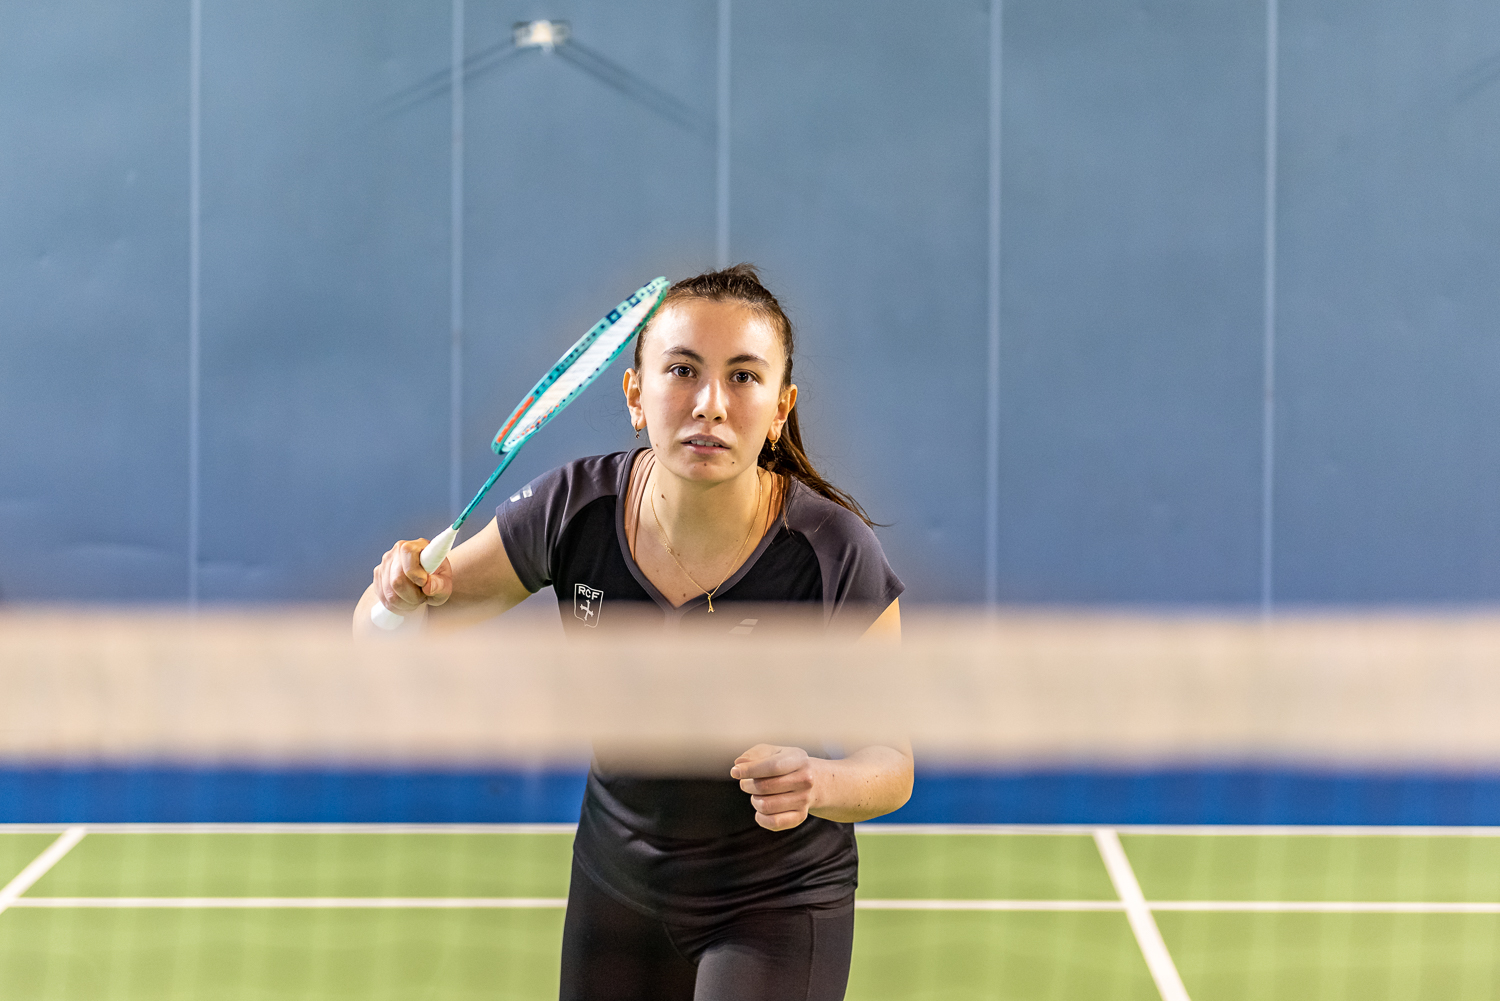 Vimala Heriau, Athlète badminton à l'INSEP